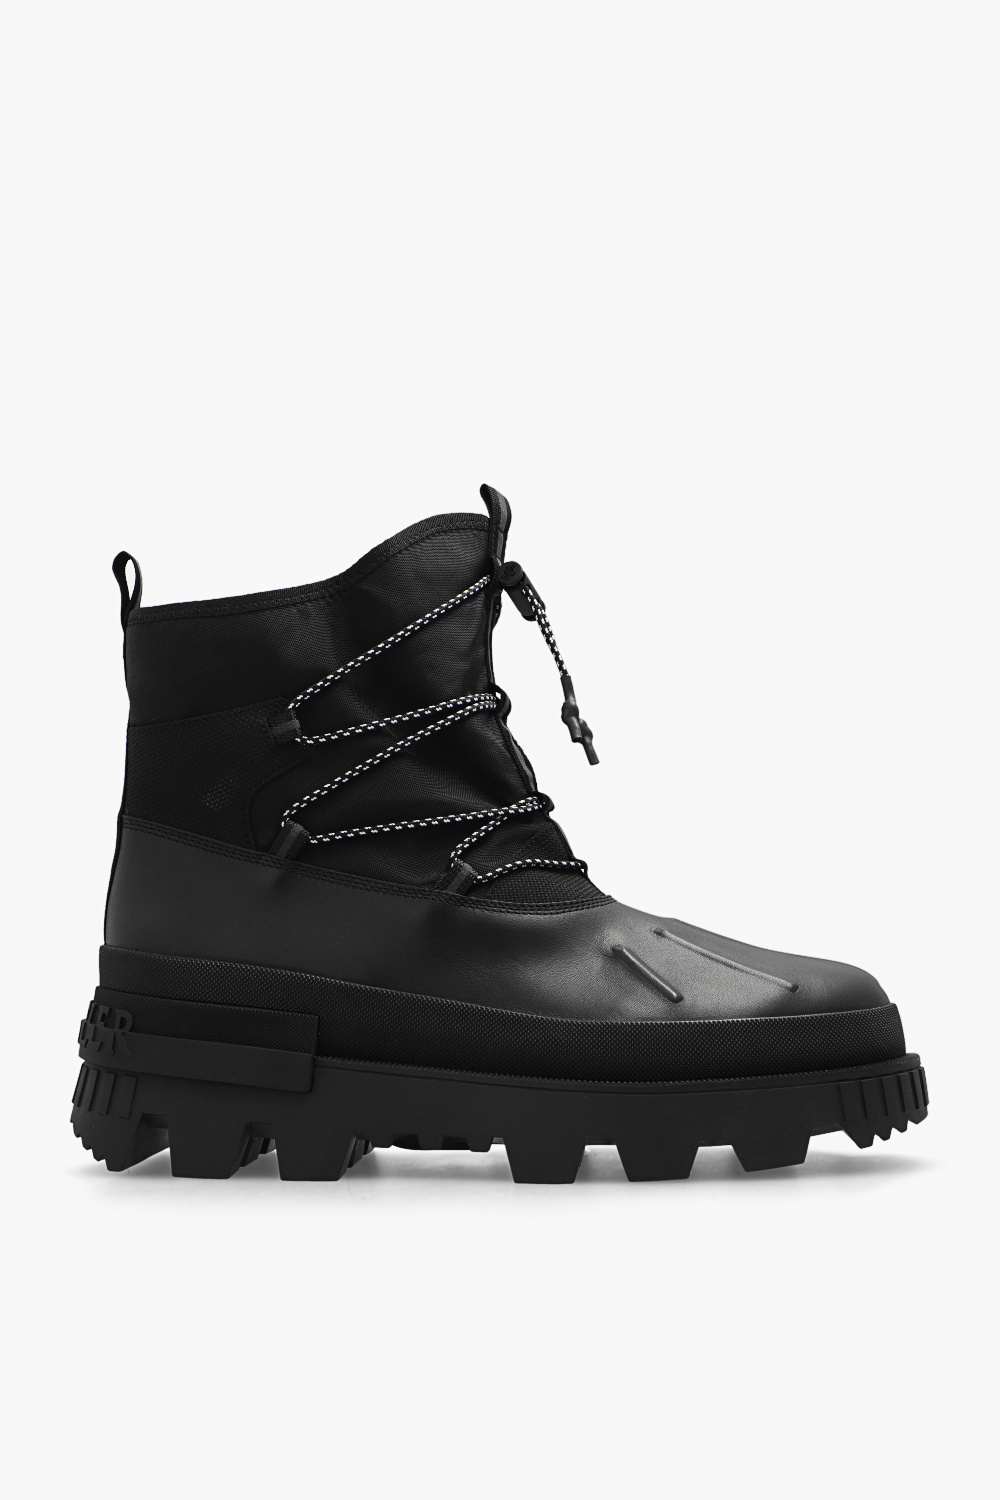 Moncler ‘Mallard’ snow boots